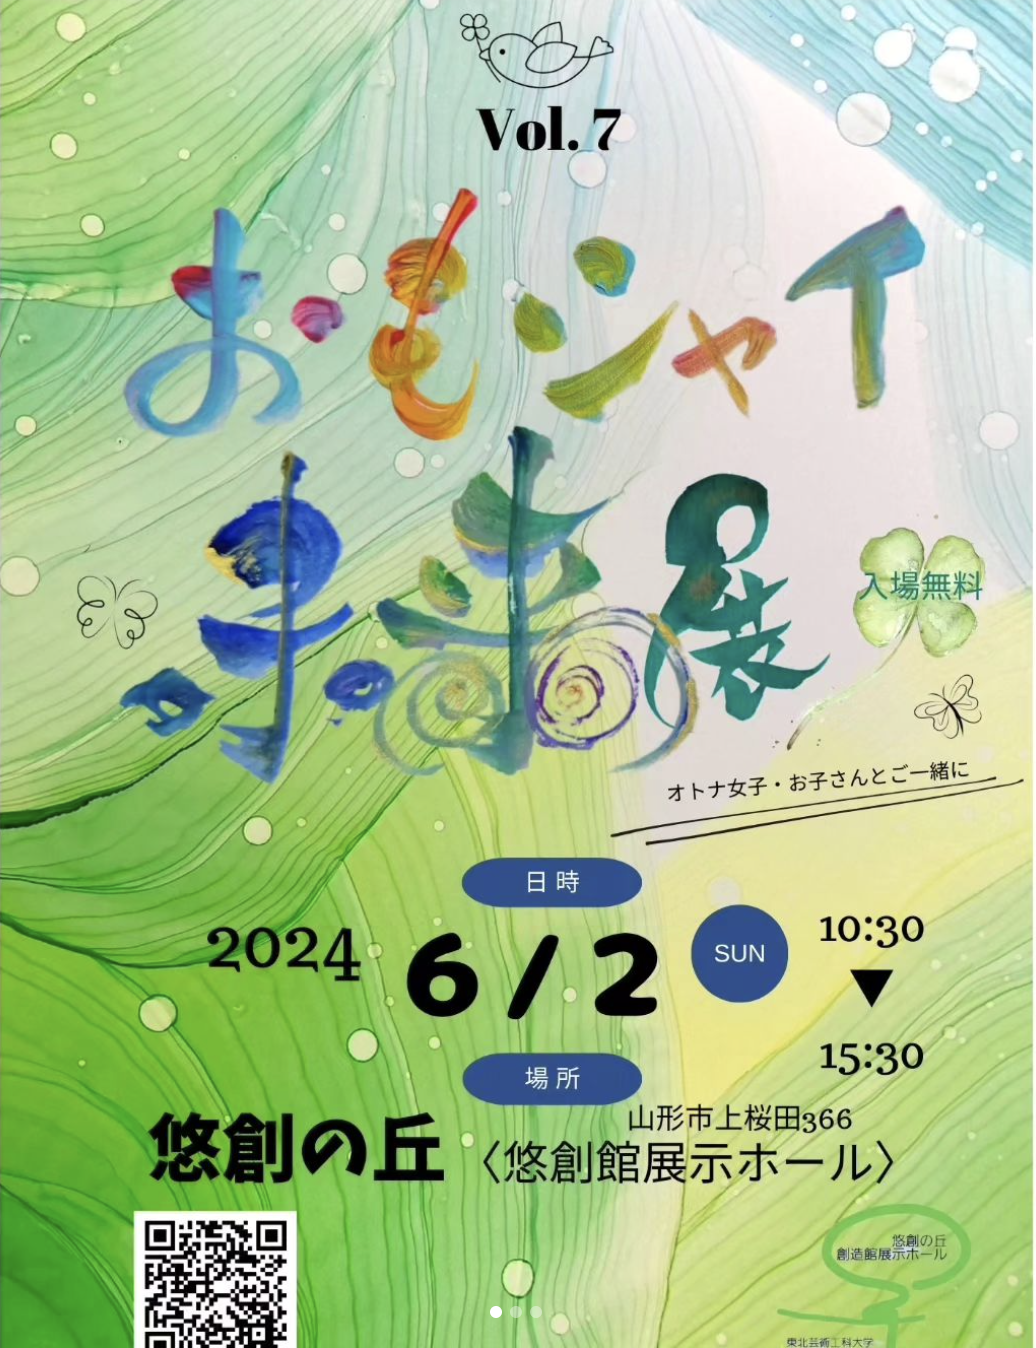 【山形イベント情報6/2】おもシャイ未来展 Vol.7が開催